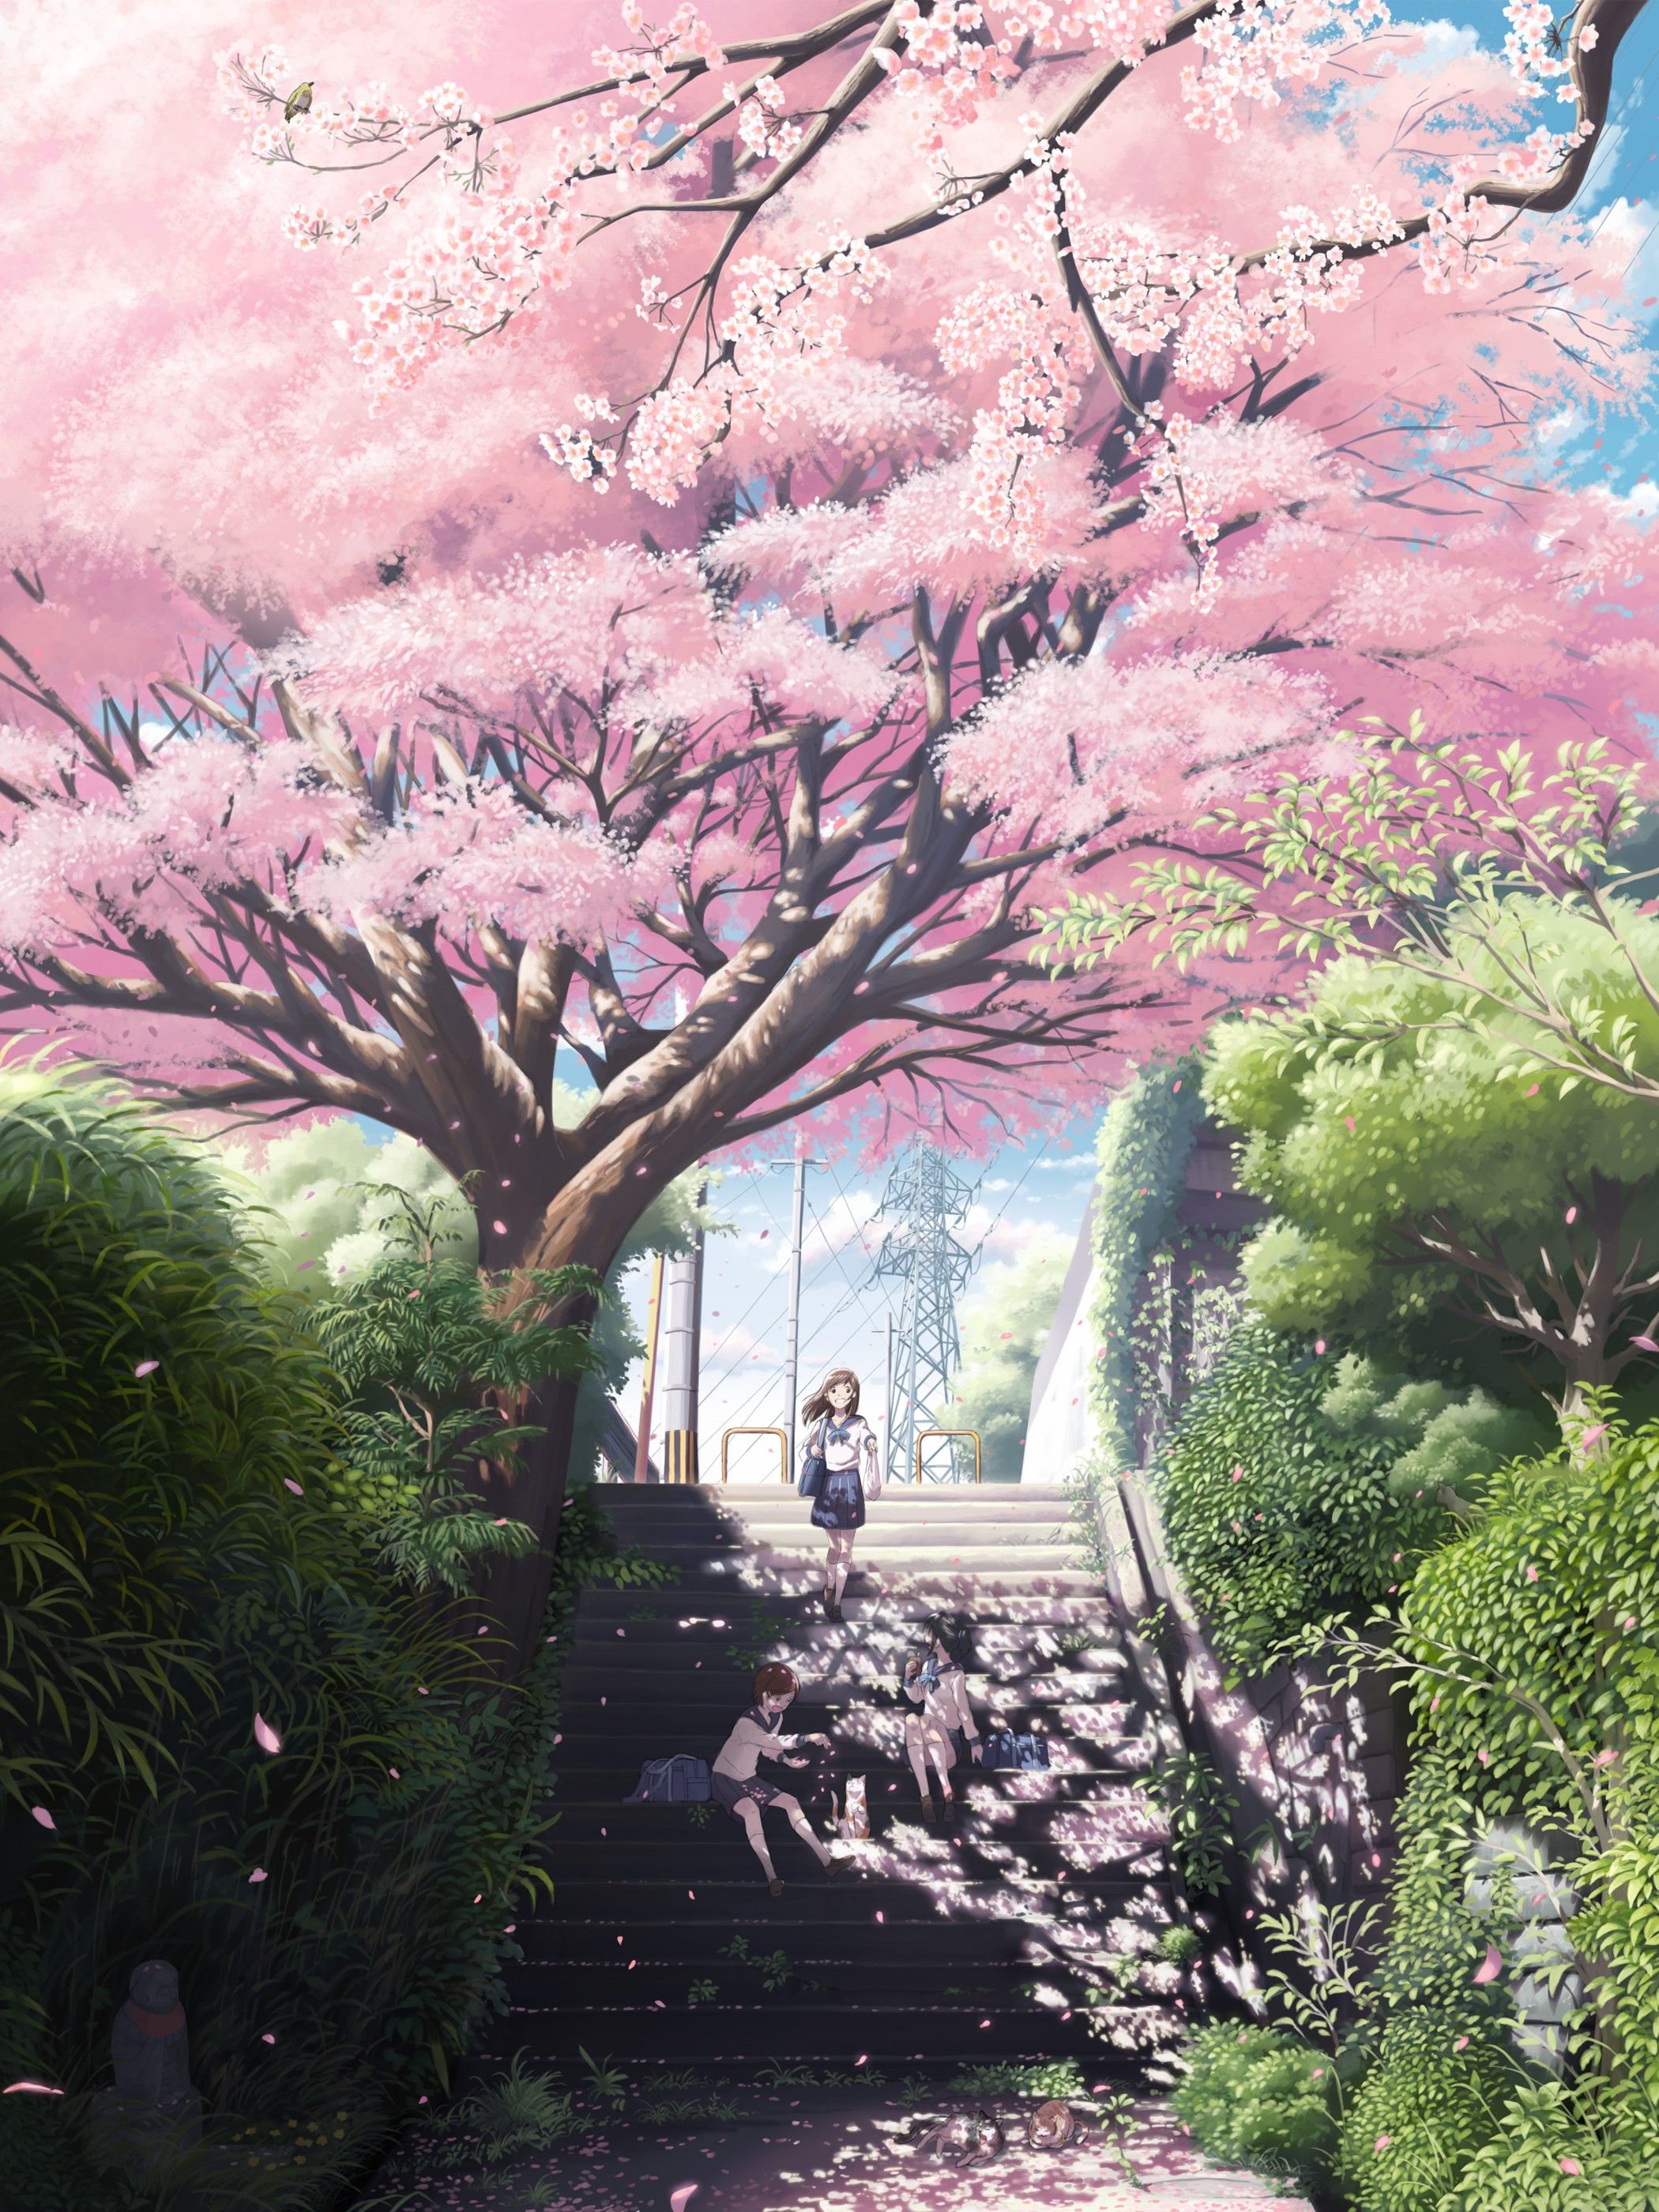 Sưu Tầm 100 hình ảnh hoa anh đào Anime đẹp lãng mạn nhất   pgddakglongeduvn